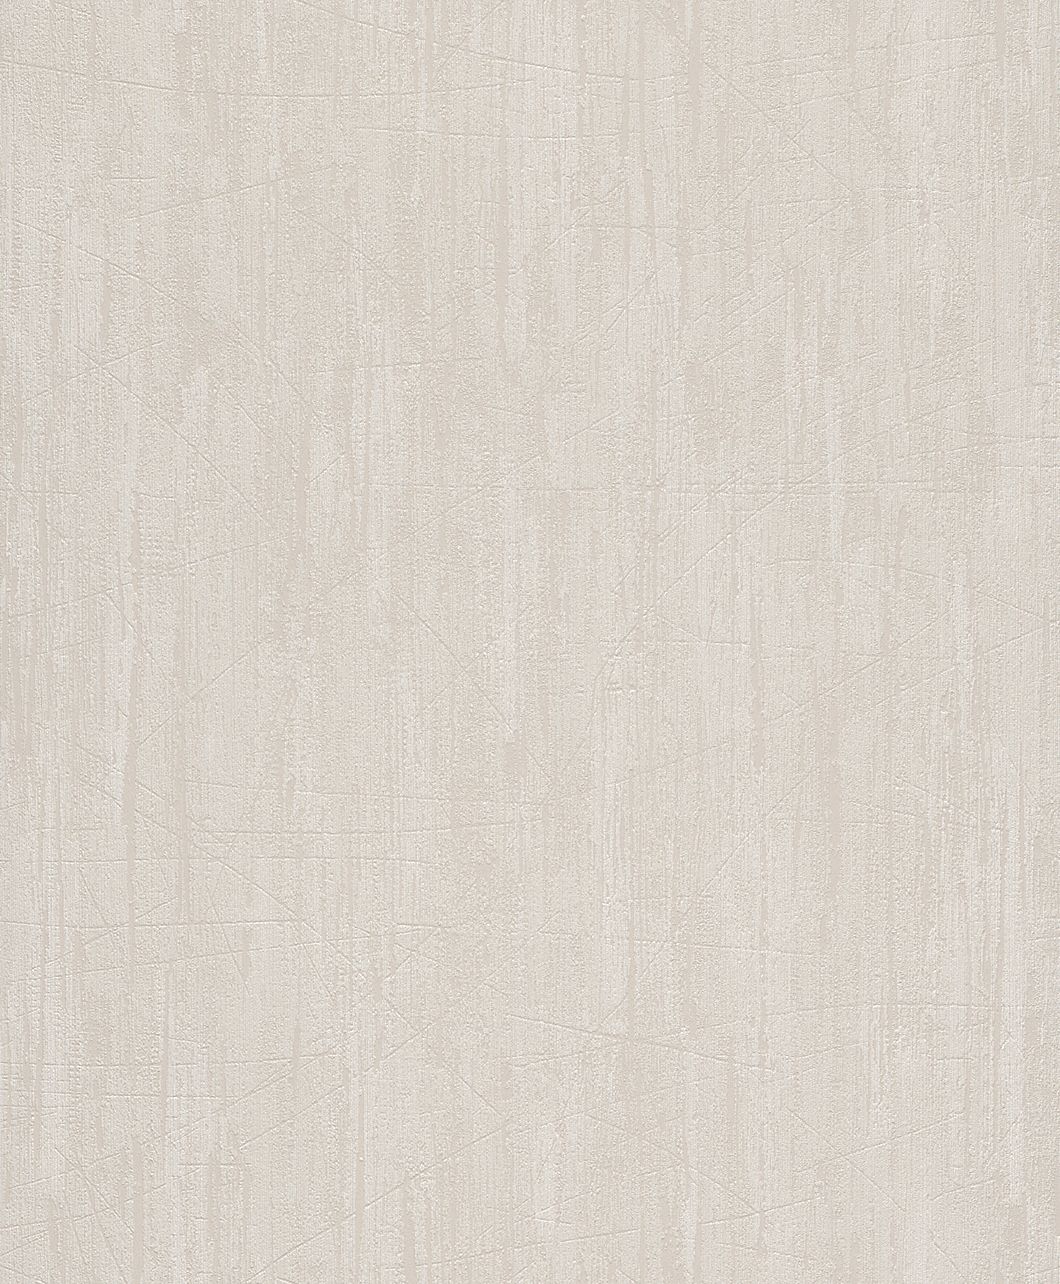 Rasch Wall Textures V, Modern, beige 480917